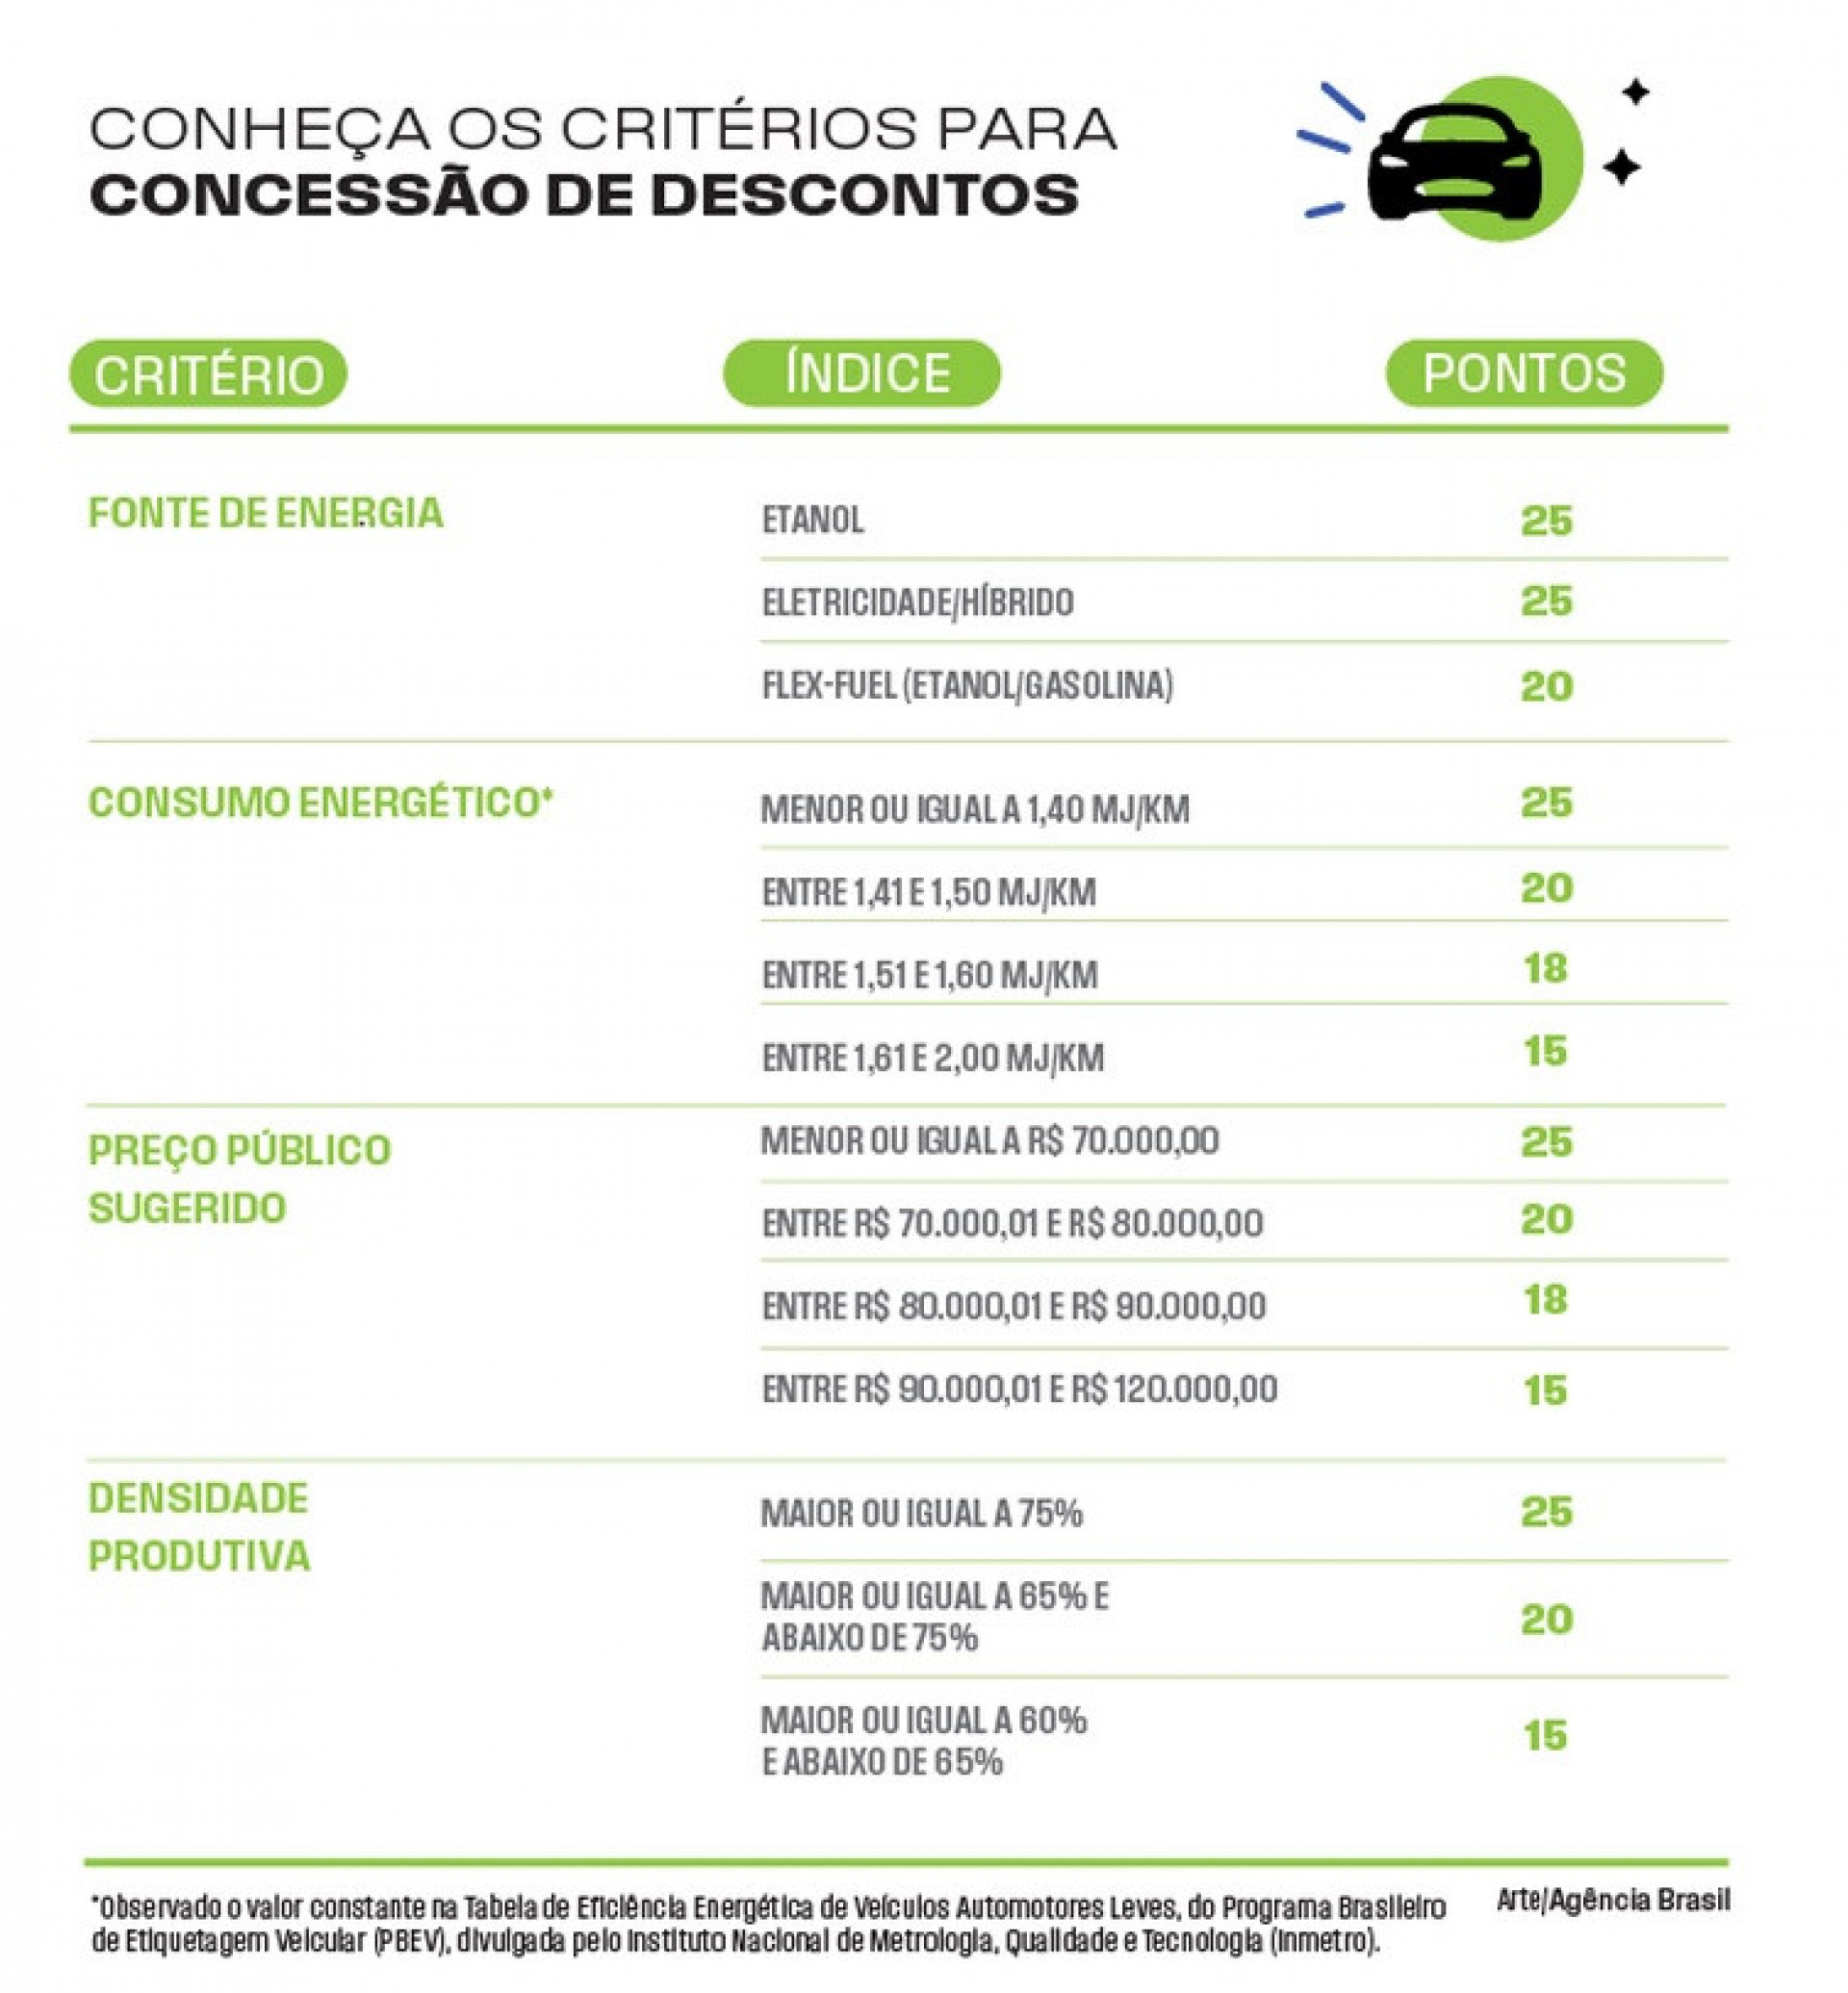 Fonte de energia e consumo energético são determinantes para o tamanho do desconto - Reprodução/Agência Brasil